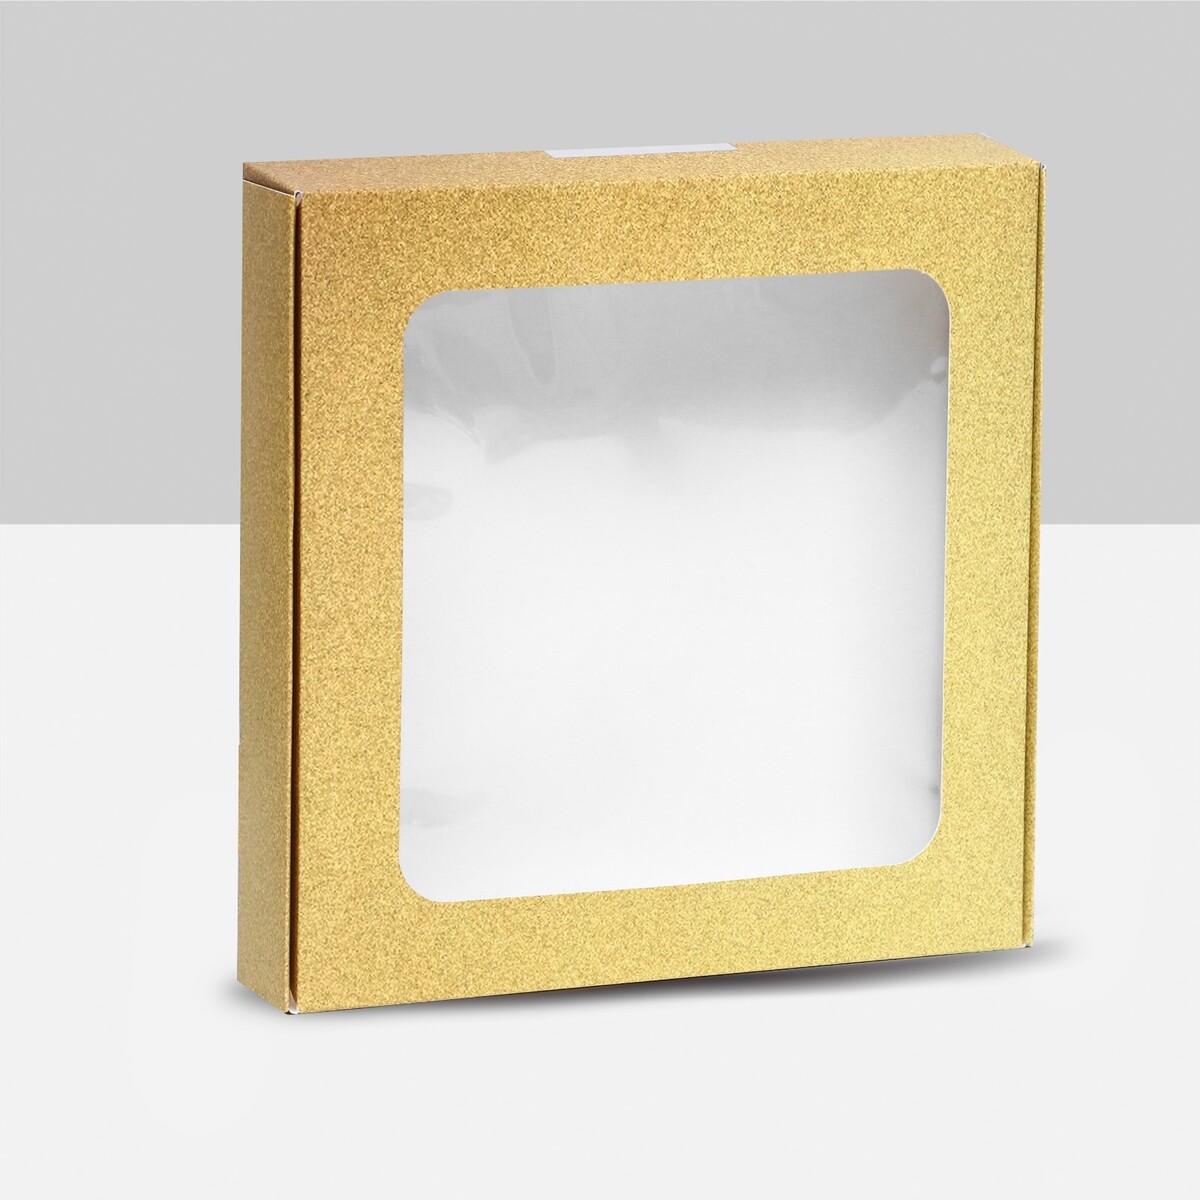 Коробка самосборная, с окном, золотая, 16 х 16 х 3 см коробка самосборная дед мороз 11 х 8 х 2 см